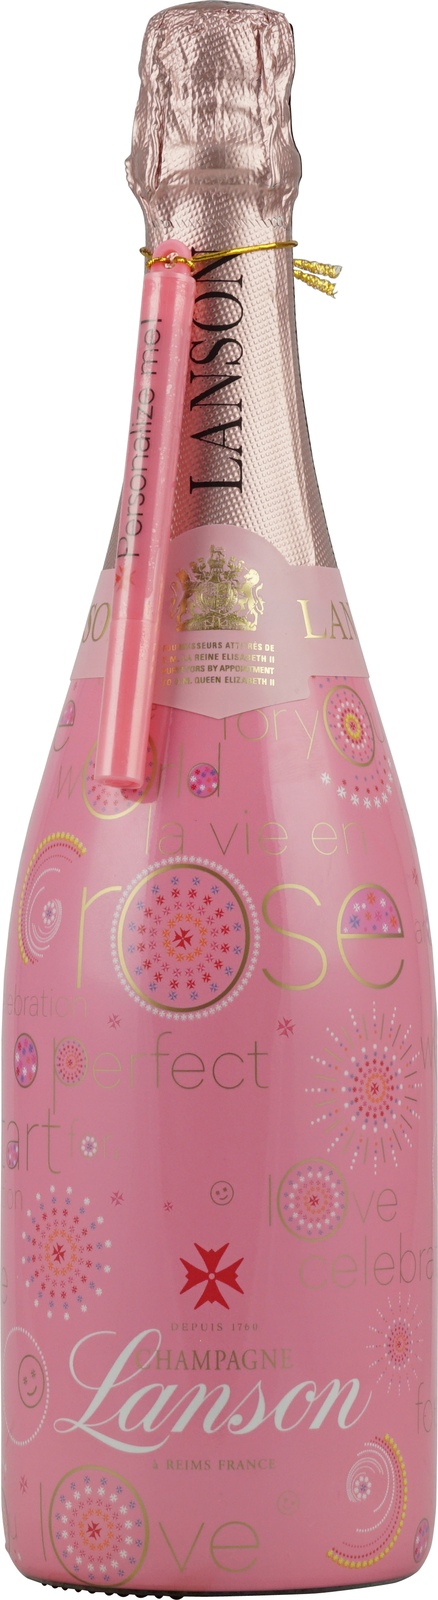 Lanson Rosé Champagner Pink Edition 0,75 Liter 12,5 % V